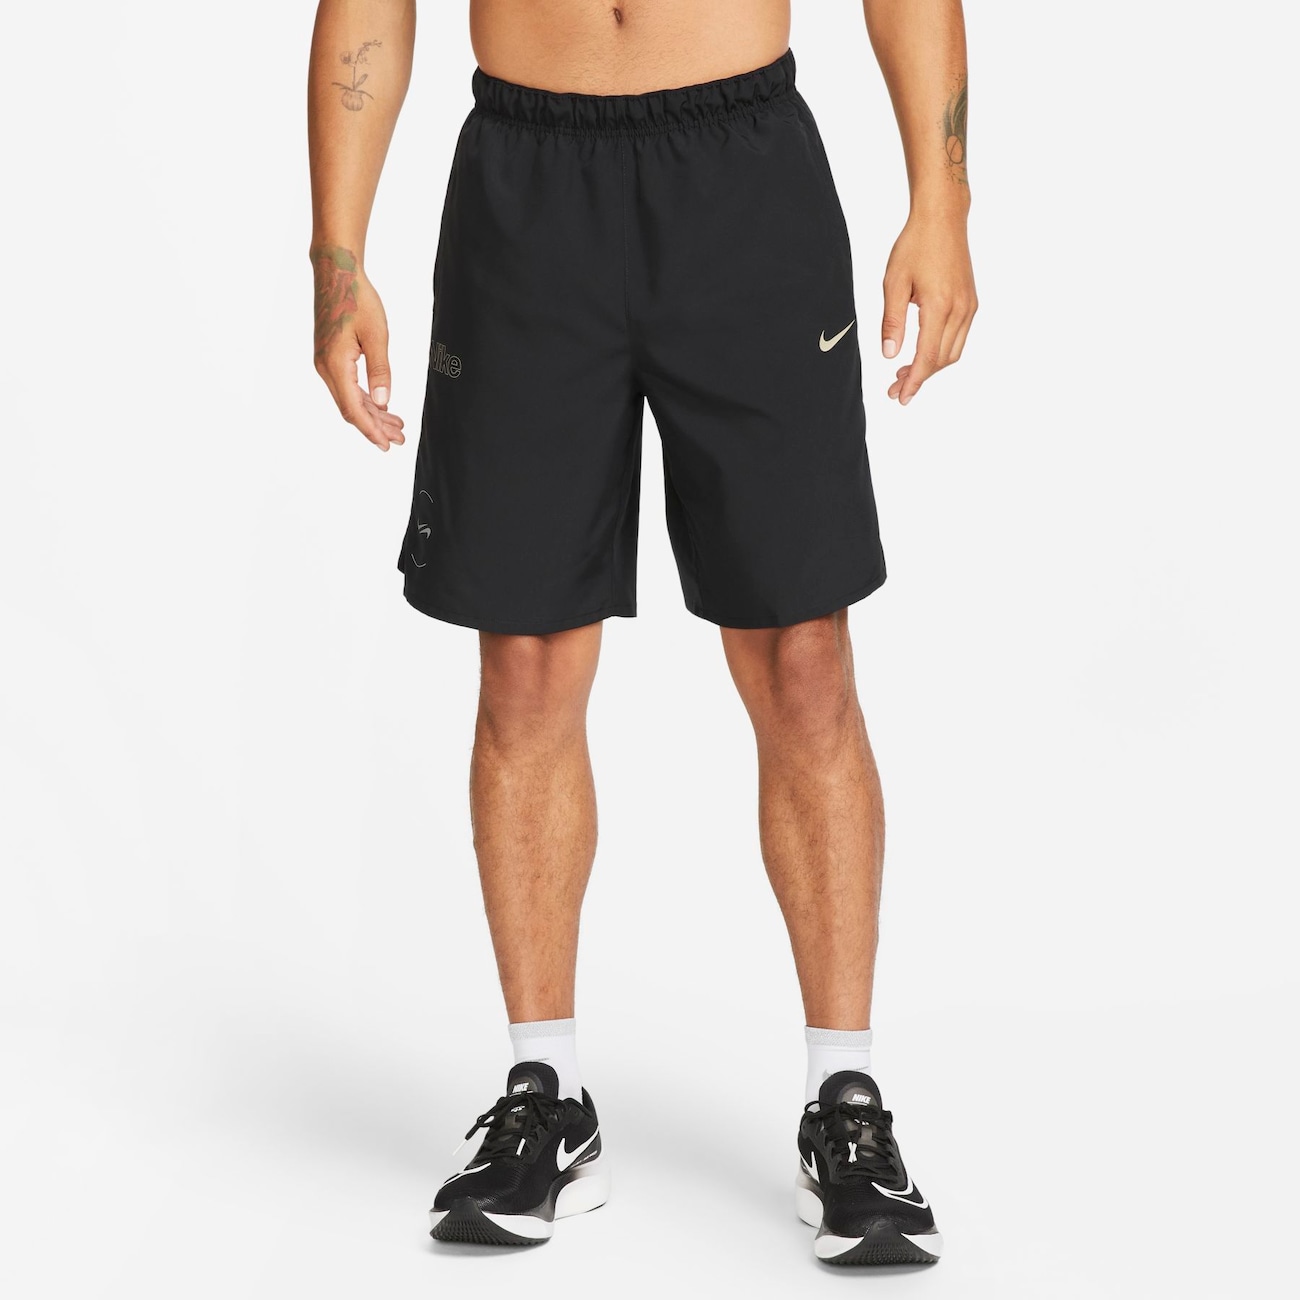 Alsidige Nike Challenger Dri-FIT-shorts (23 cm) uden for til mænd - sort